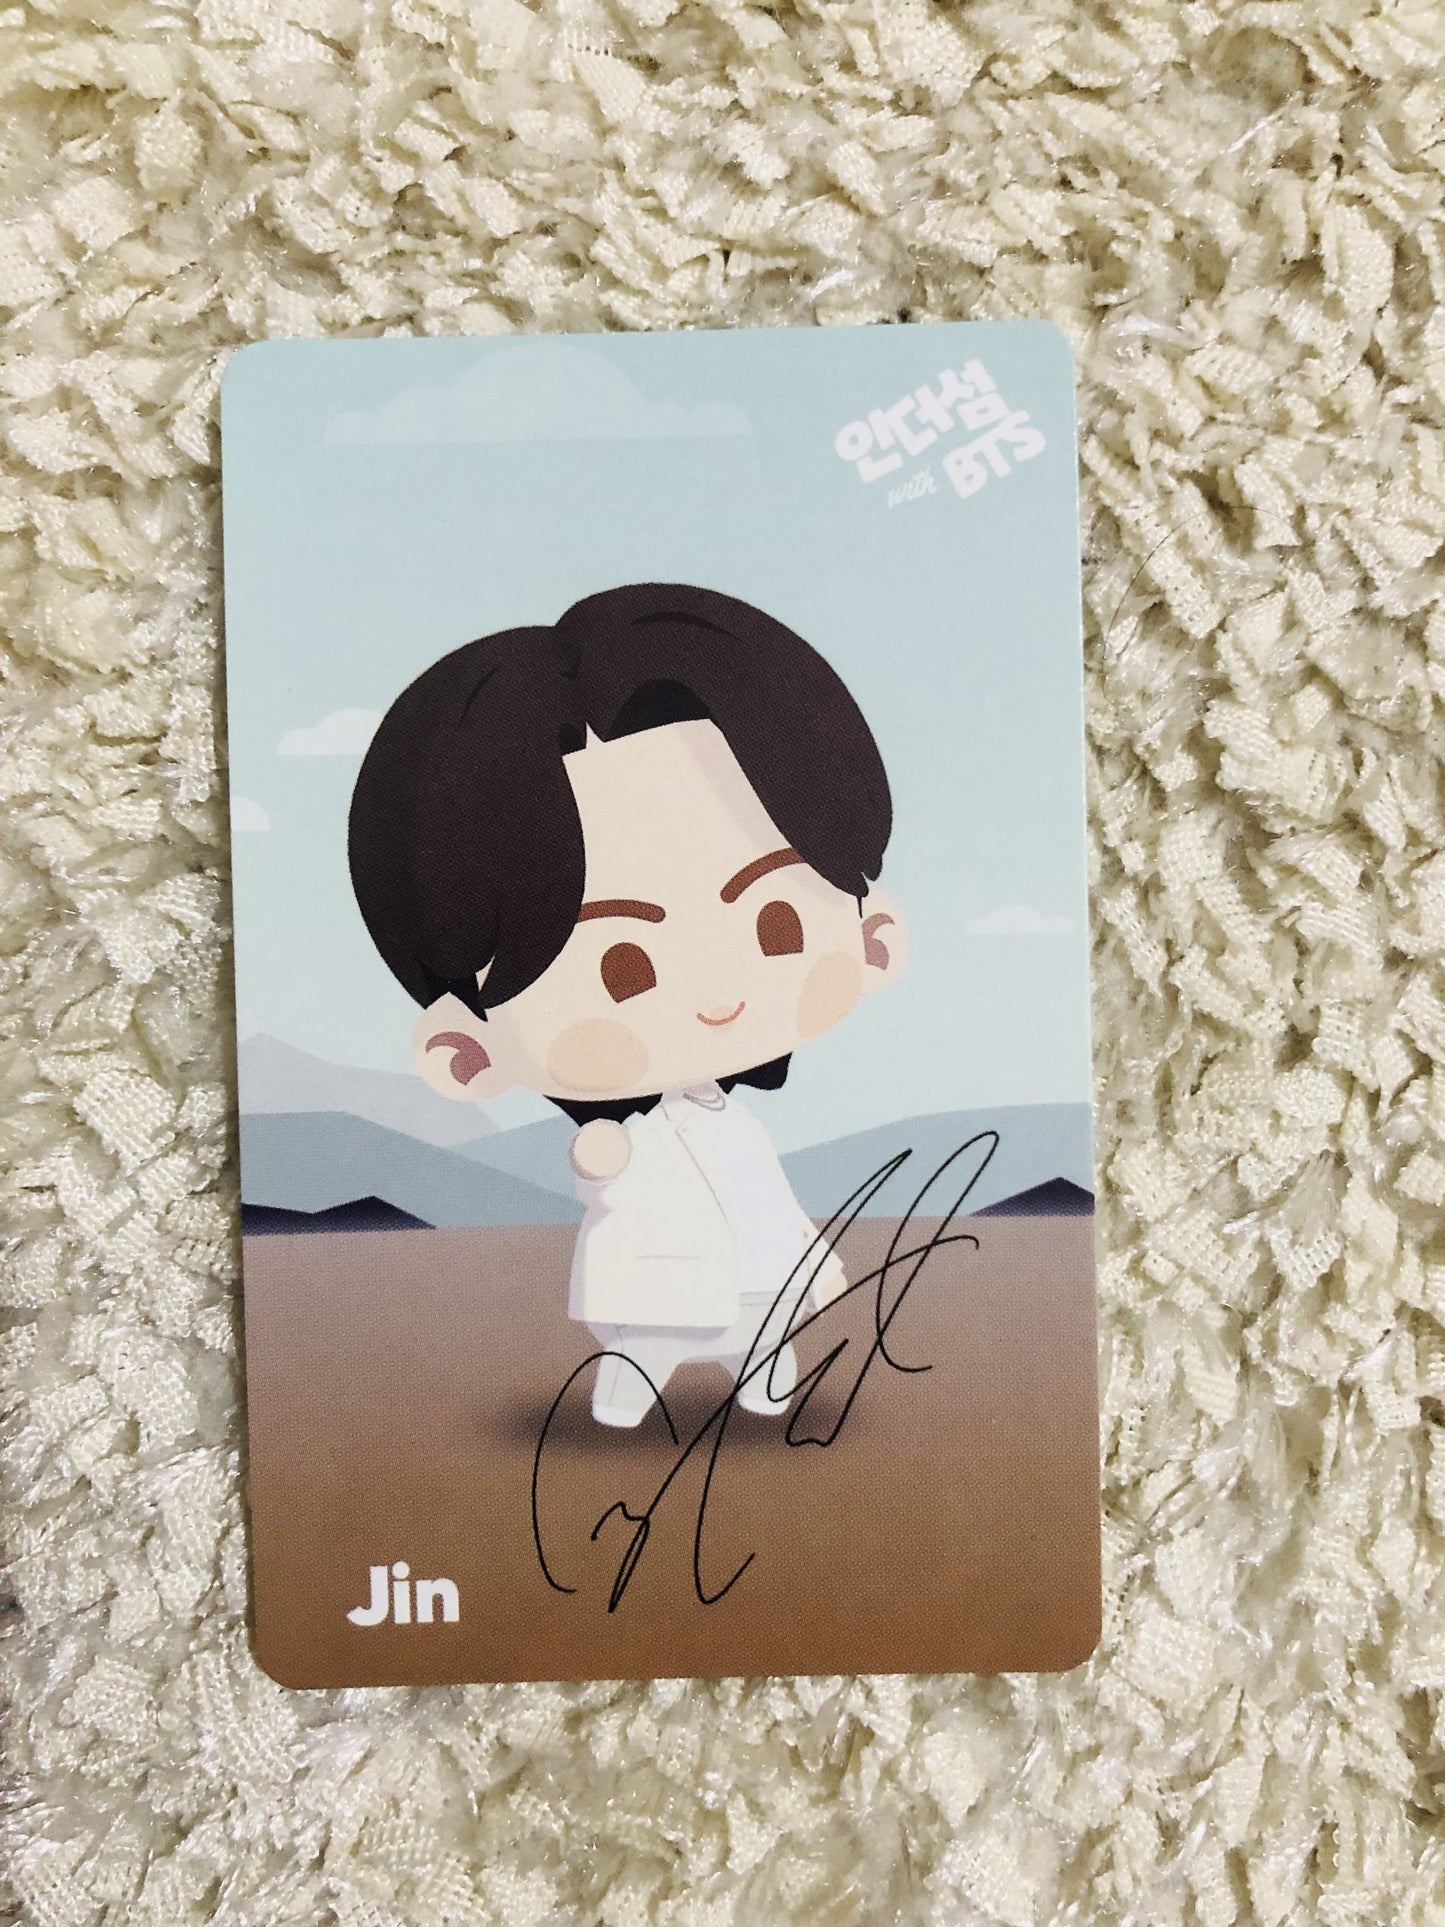 In the Seom Jin Photocard